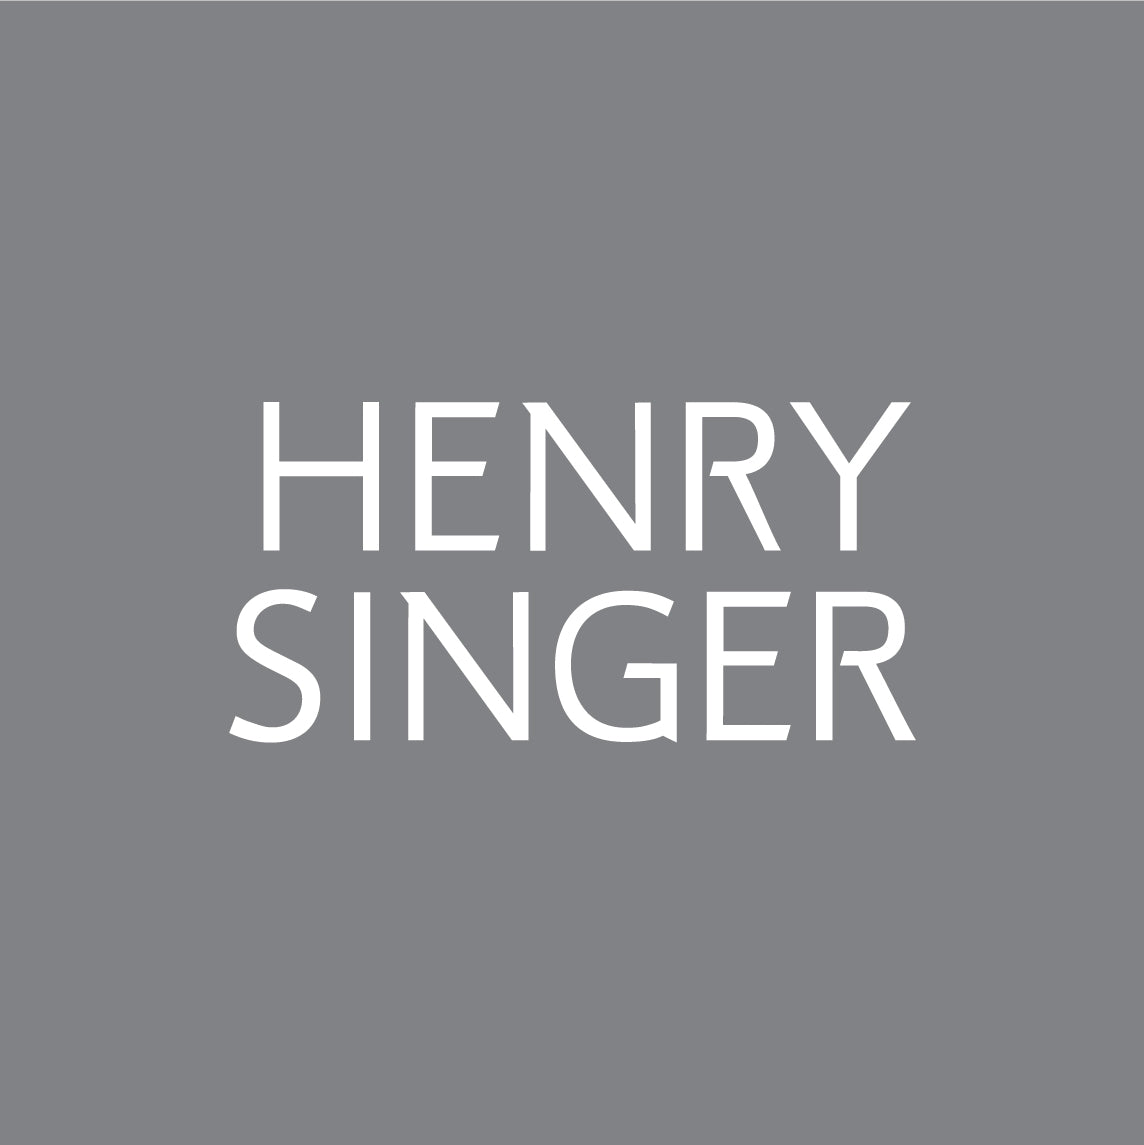 www.henrysinger.com